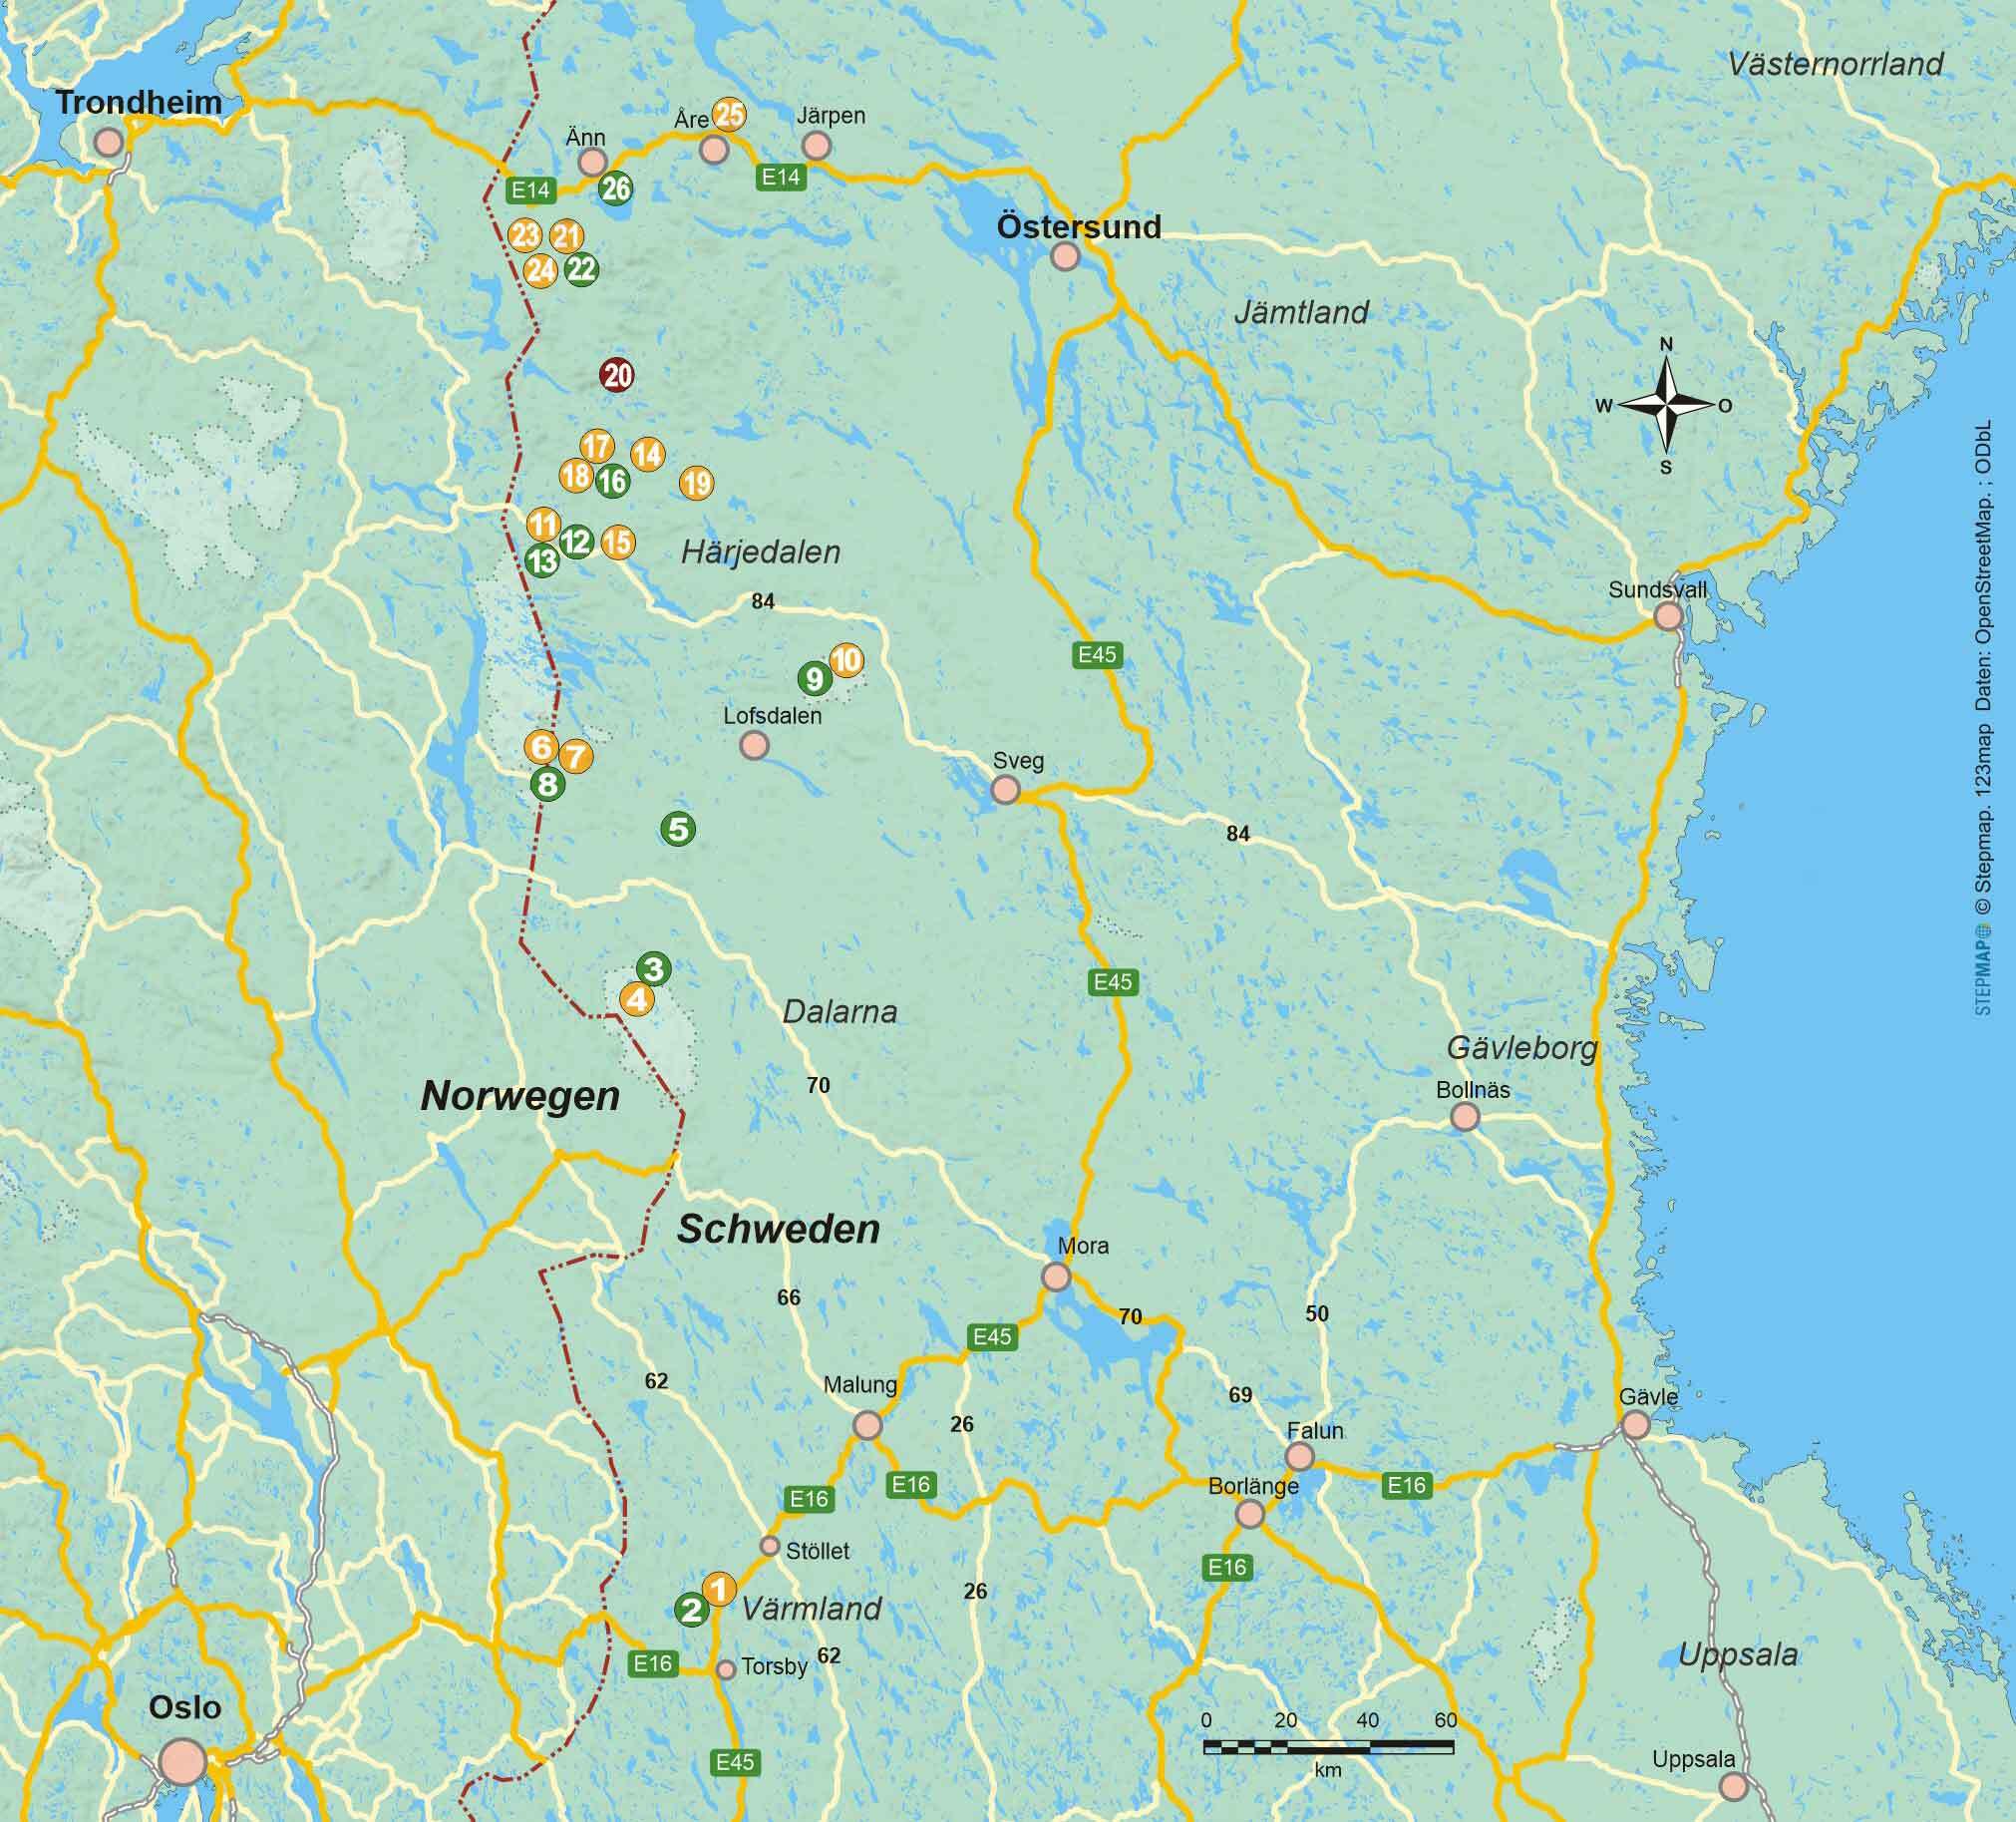 Wanderführer Mittelschweden - 26 kurze Tageswanderungen